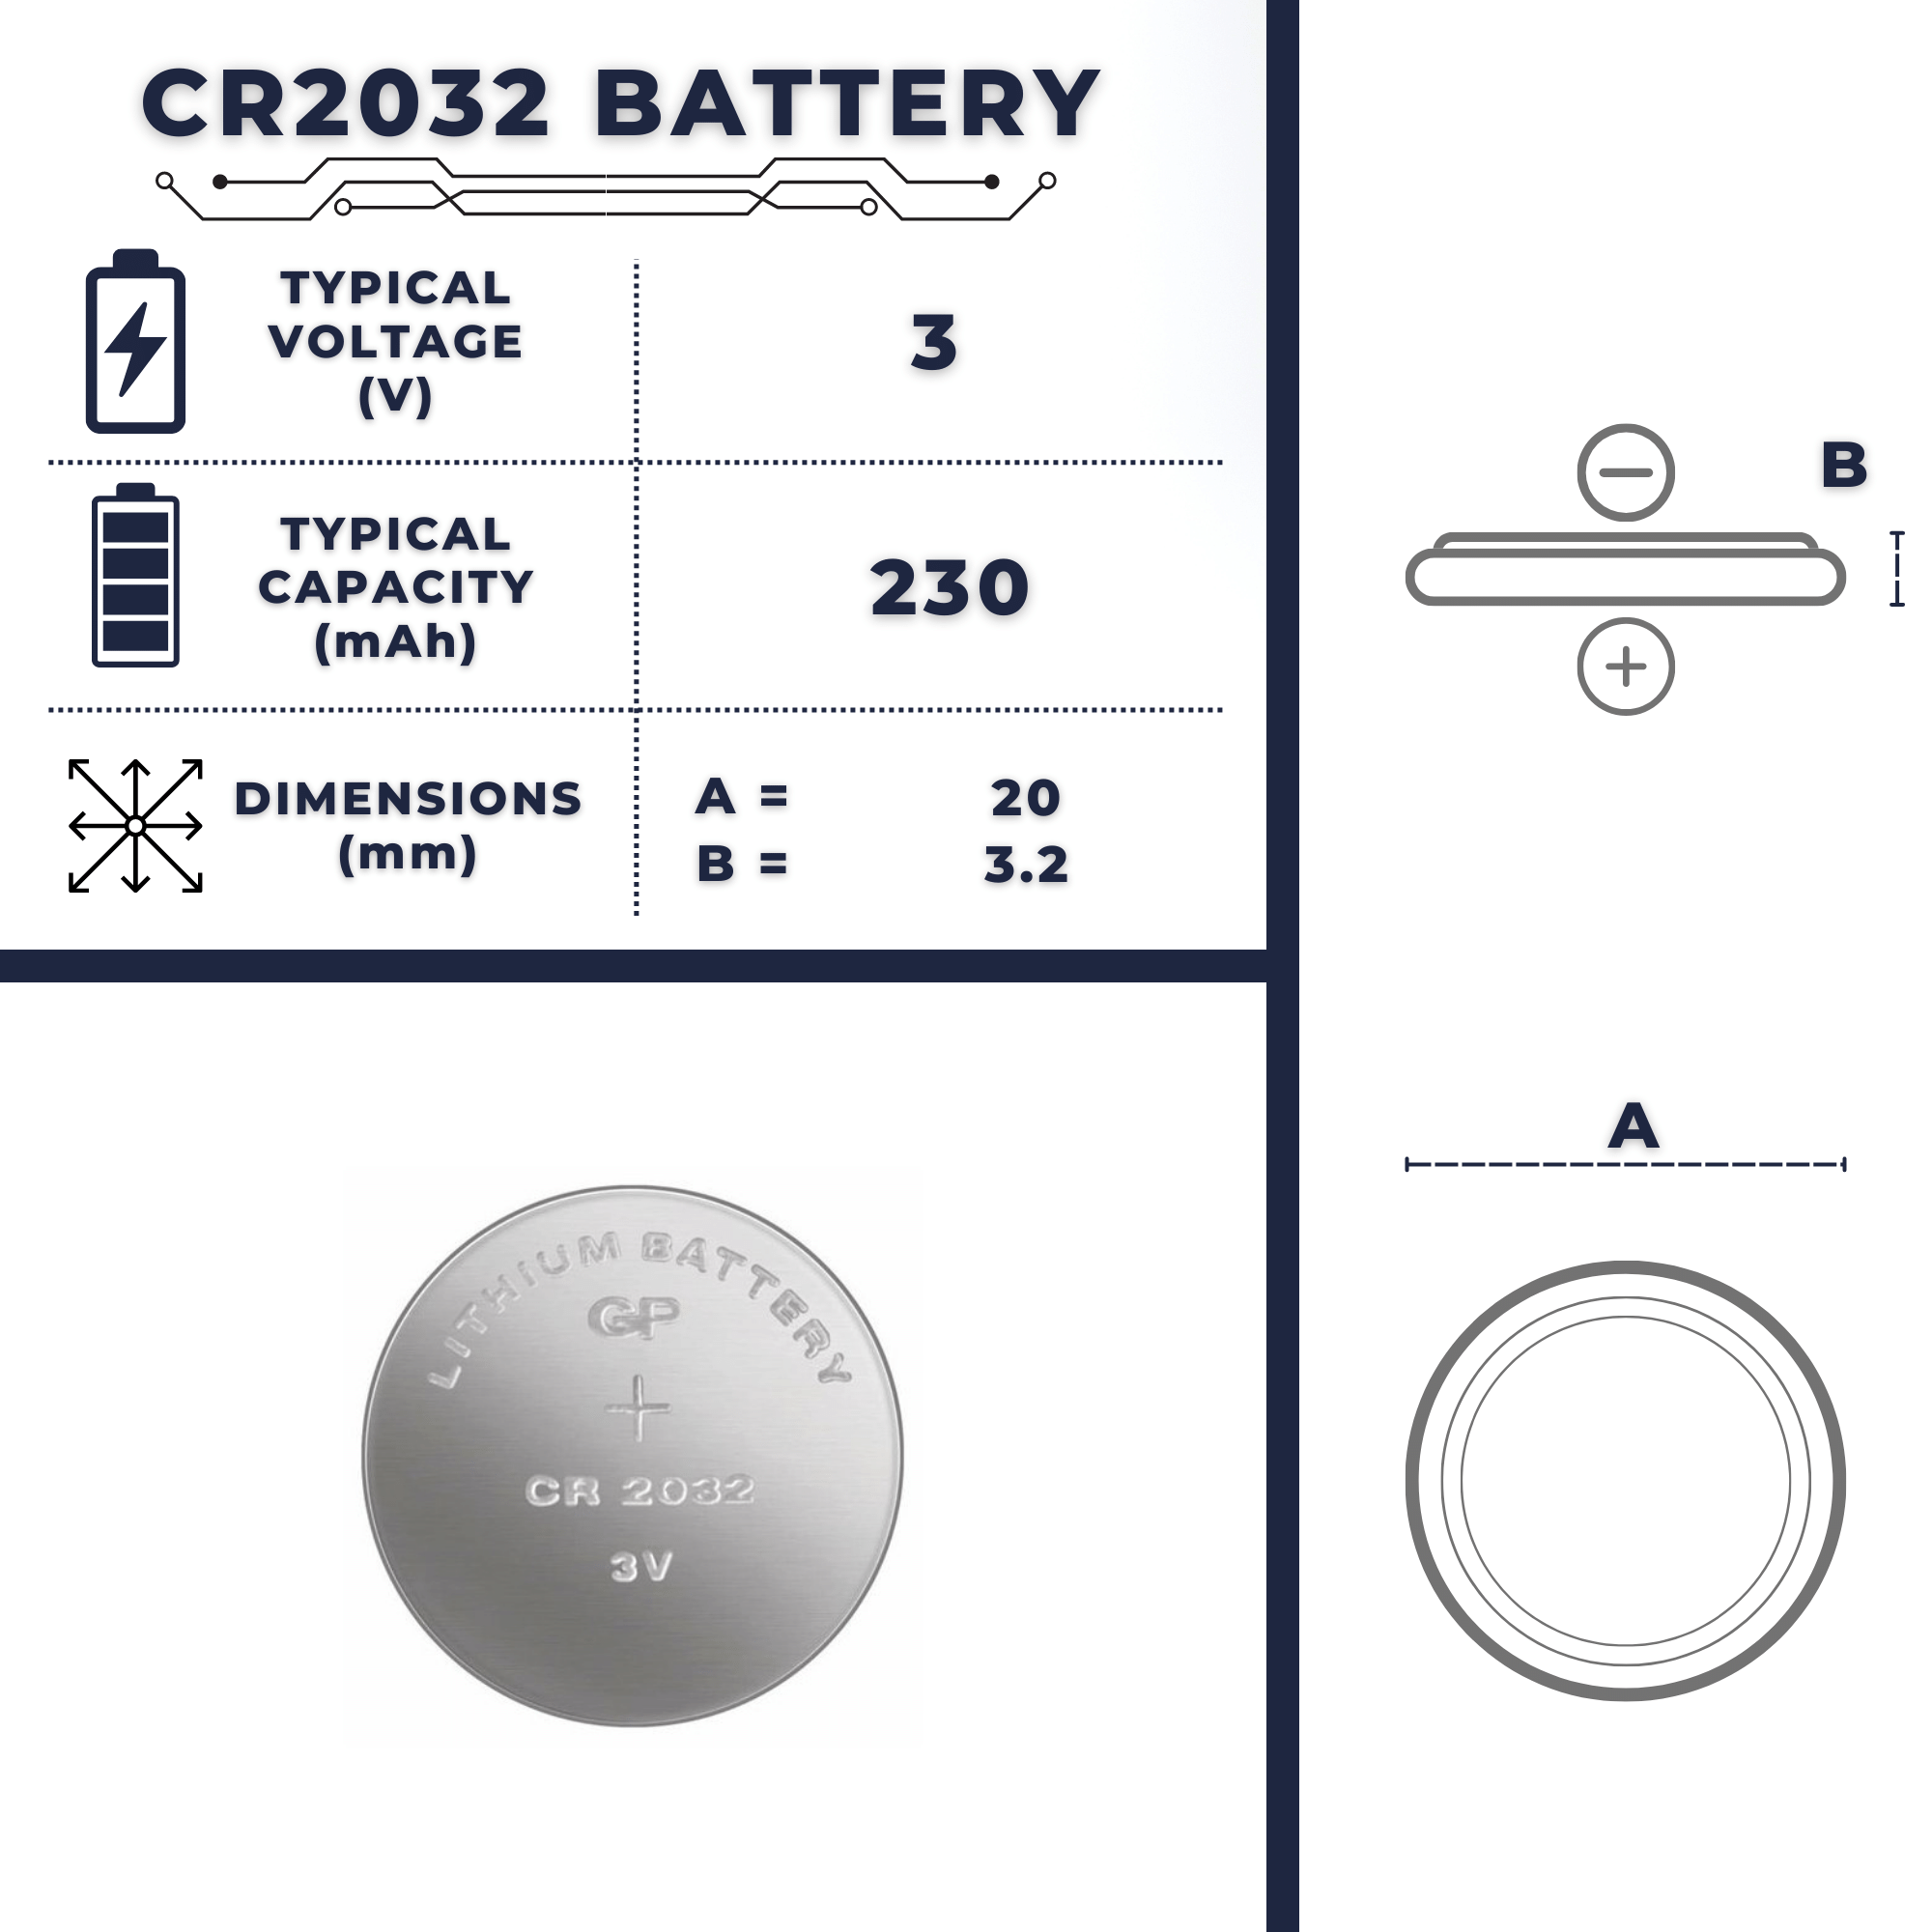 Batería CR2025  Tamaño, voltaje, capacidad, beneficios y usos